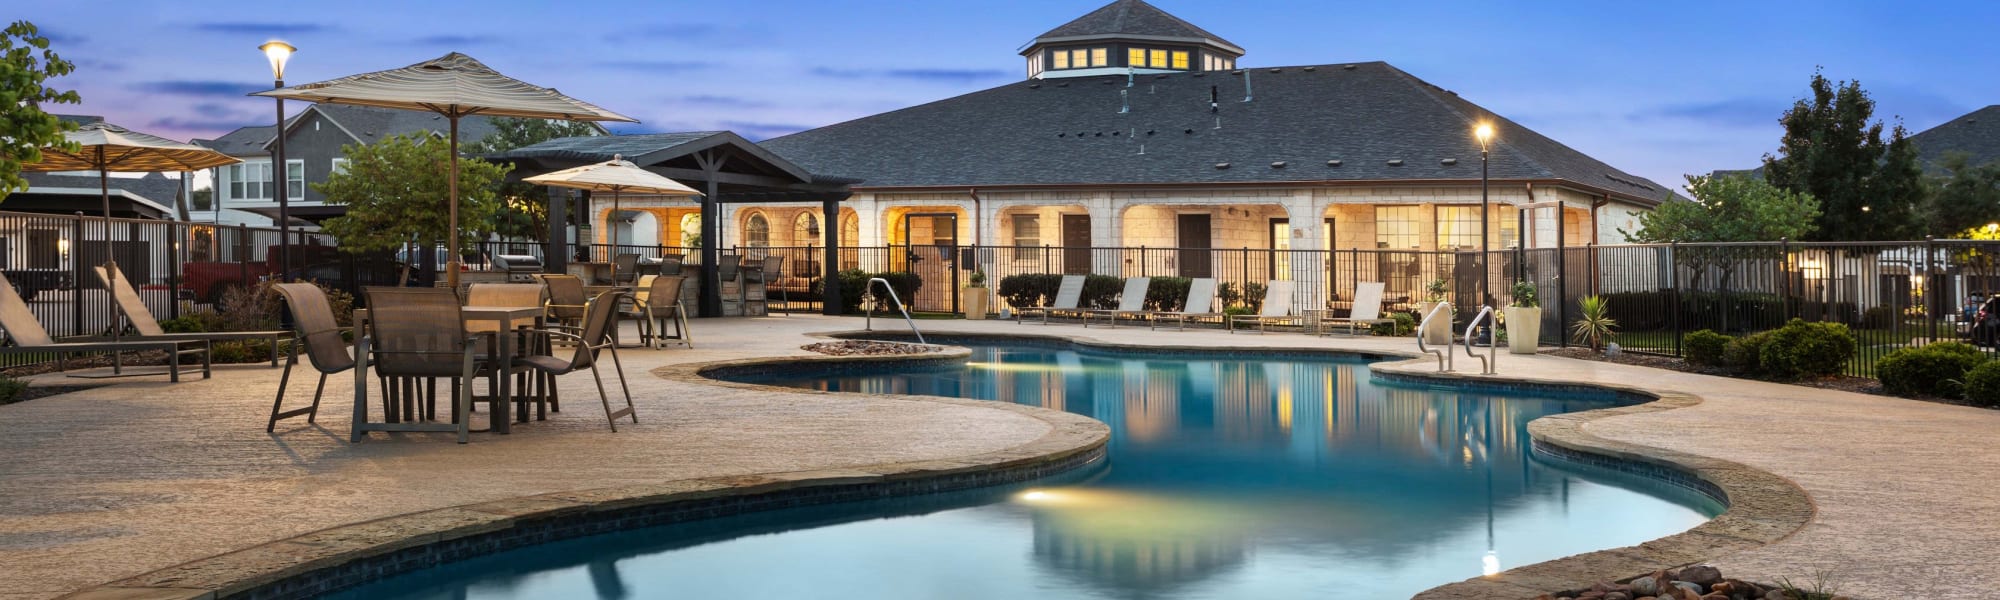 Resort type swimming pool at Olympus Woodbridge in Sachse, Texas